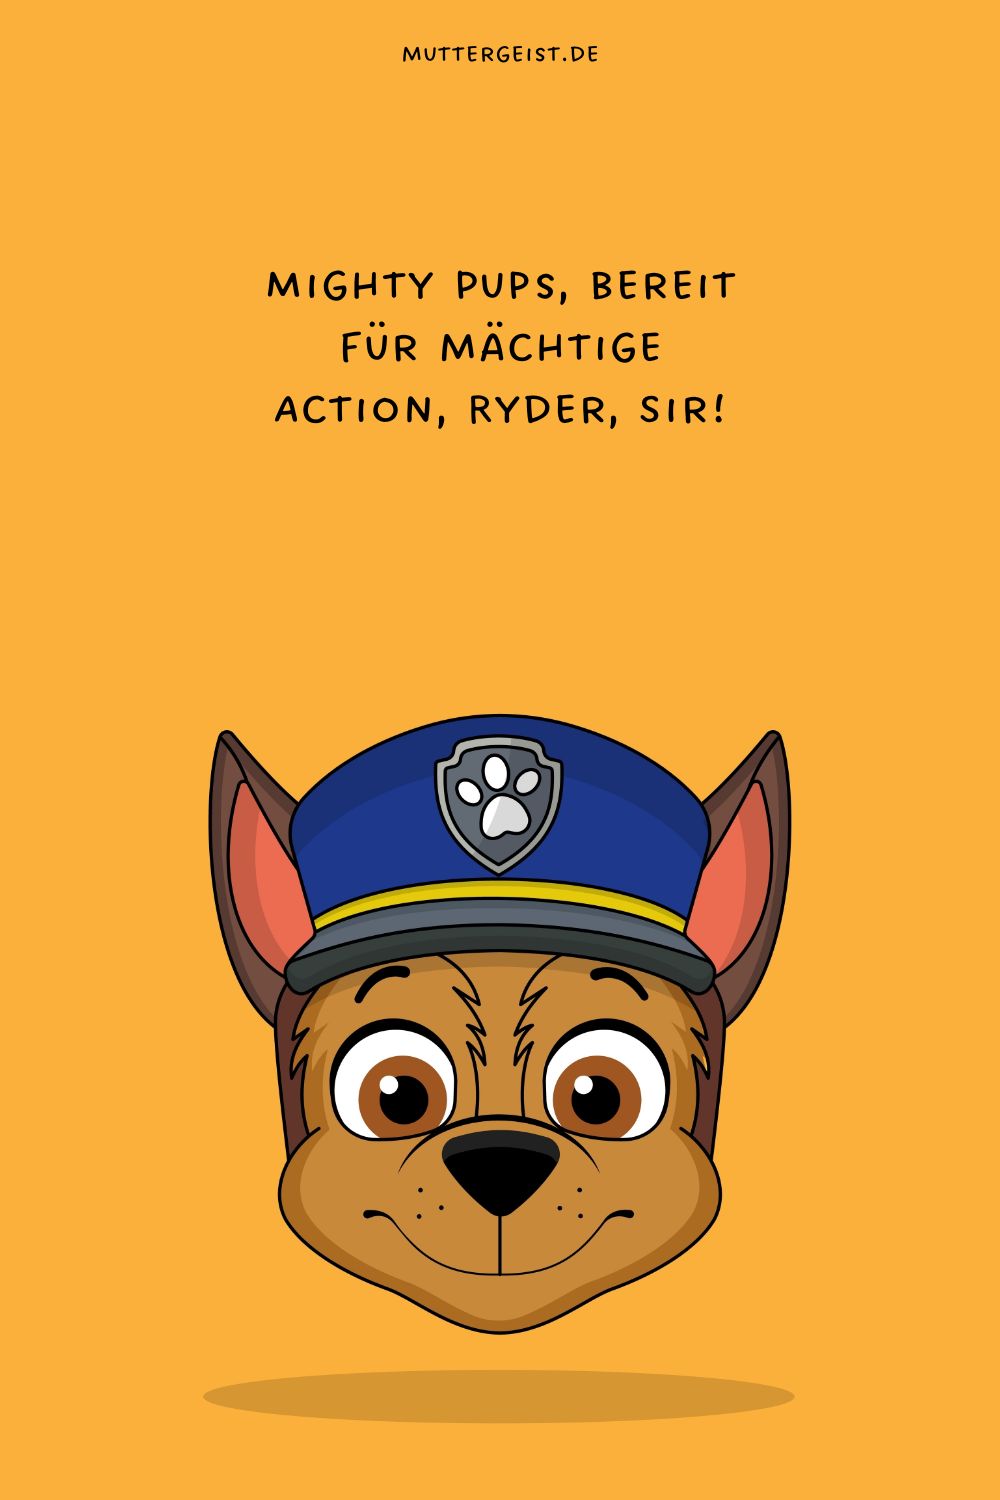 Mighty Pups, bereit für mächtige Action, Ryder, Sir!